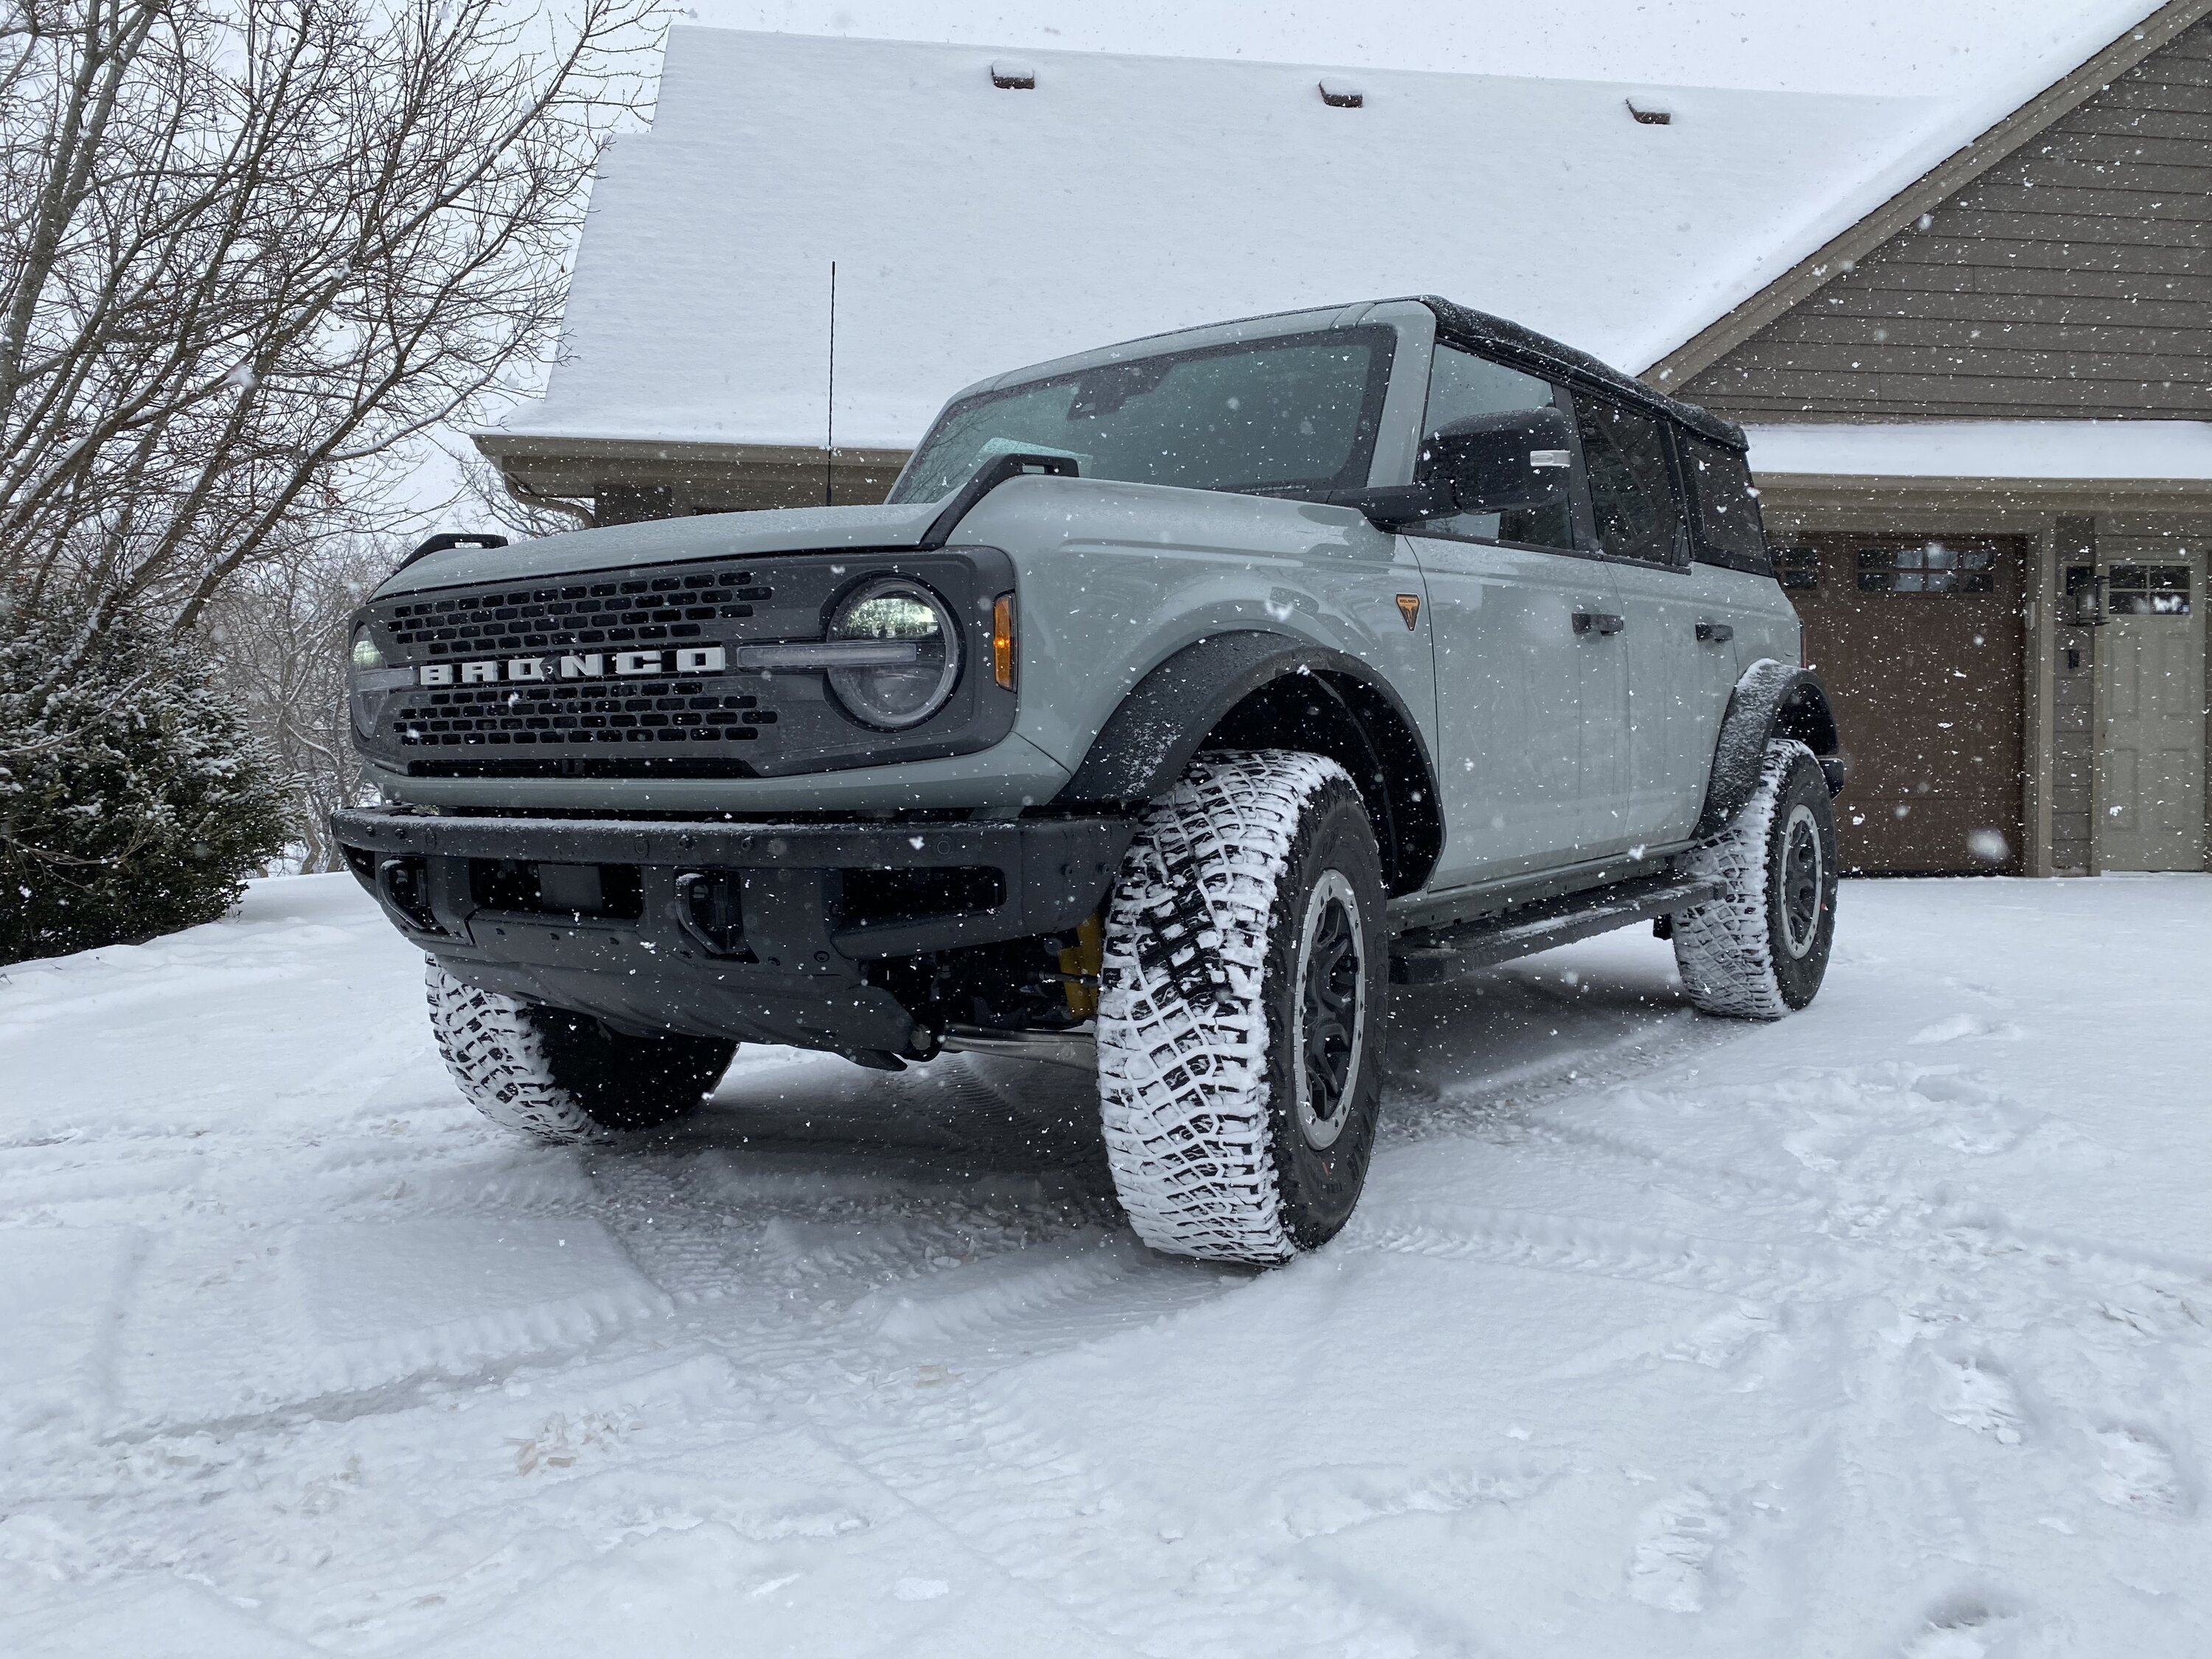 Ford Bronco Show us your Bronco snow pics!! ☃️❄️🥶 CD462C6D-7831-484E-A9DA-0F220049D058